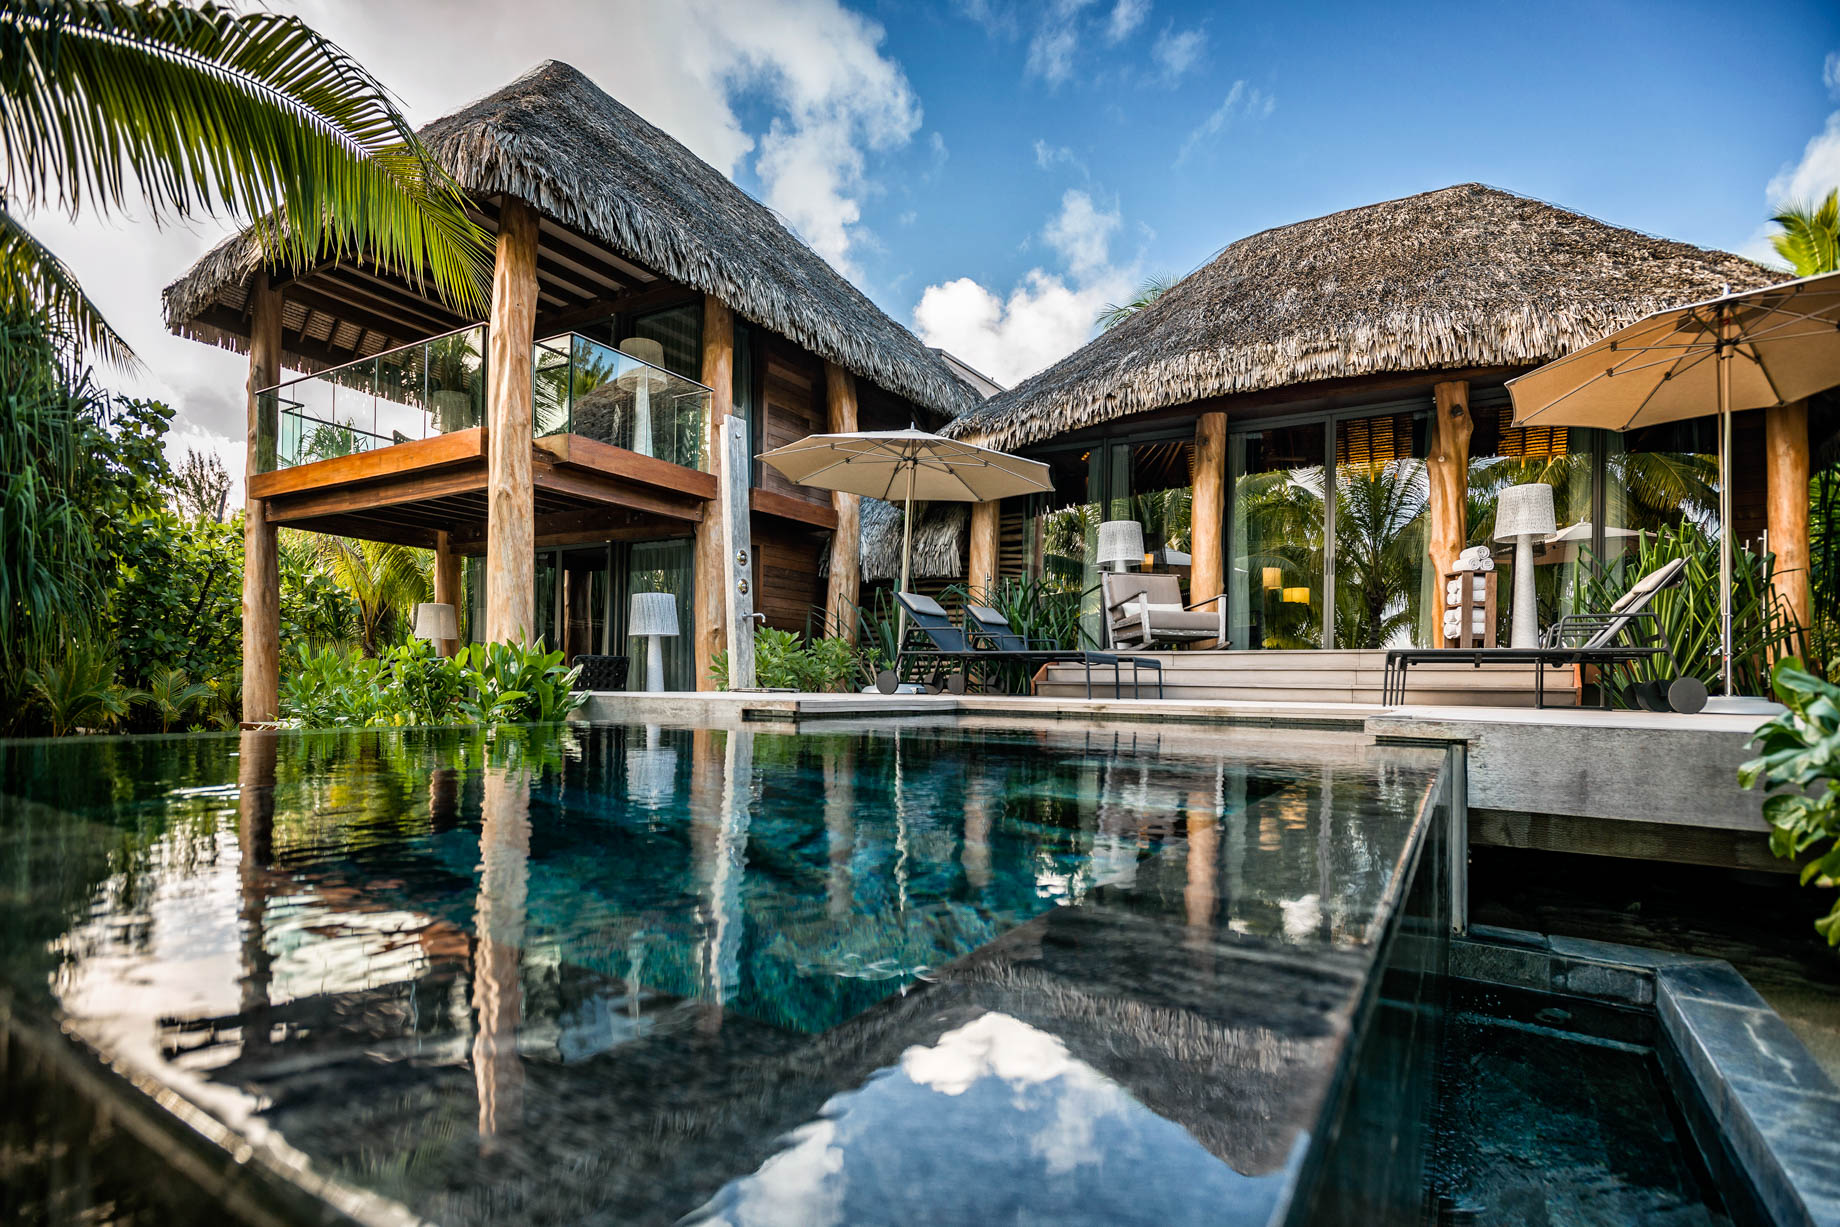 The Brando Resort - Tetiaroa Private Island, French Polynesia - 2 Bedroom Beachfront Villa Pool